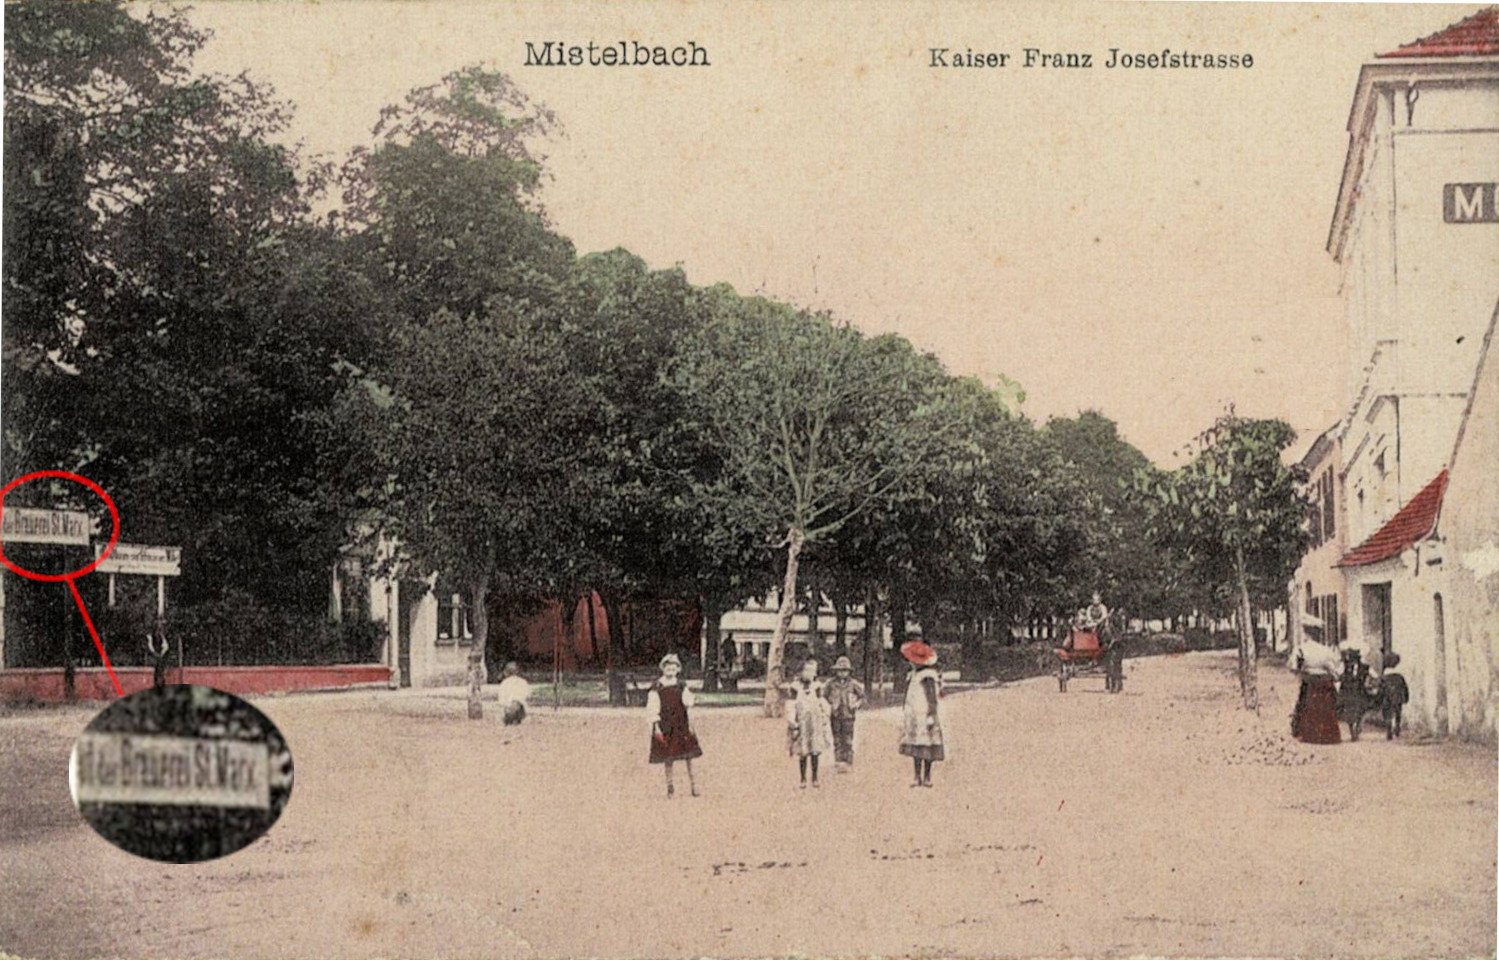 Auf dieser 1910 gelaufenen Ansichtskarte ist links gerade noch der Schriftzug "(Bierdepot) der Brauerei St. Marx" erkennbar (siehe vergößertes Detail) und damit ist der Standort beim Gasthaus "Zum schwarzen Adler" in der Franz Josef-Straße auch bildlich dokumentiert.